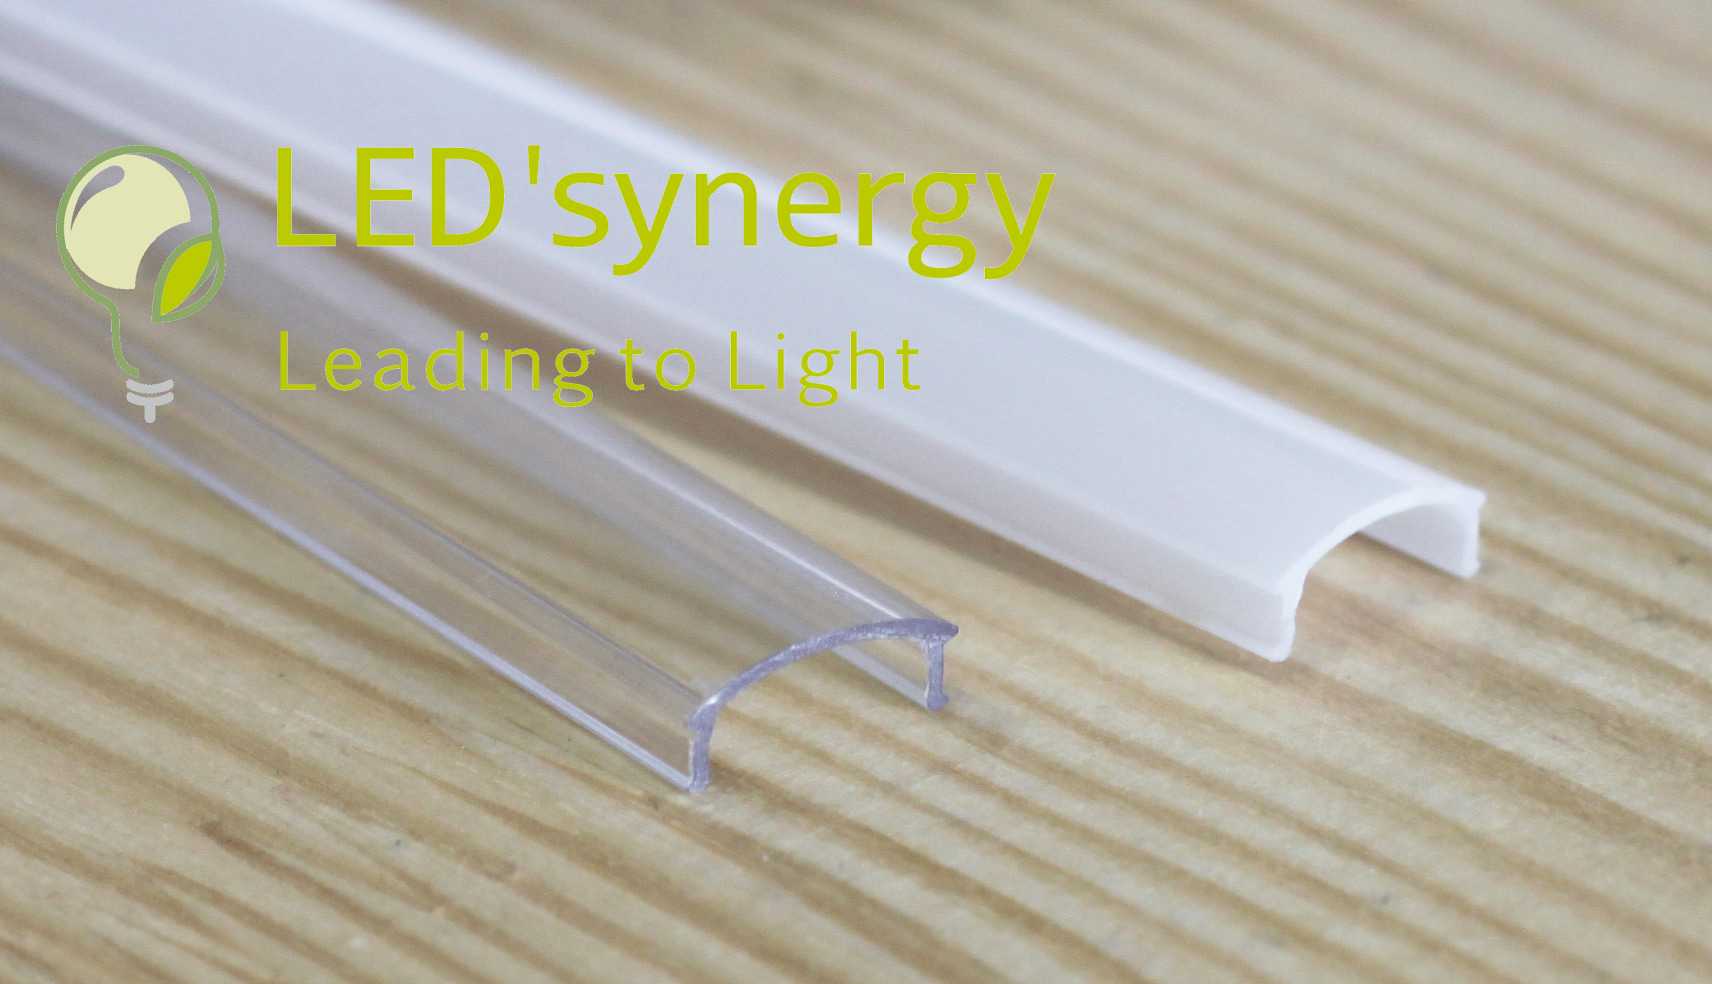 Direct led или edge led, какой тип подсветки лучше?